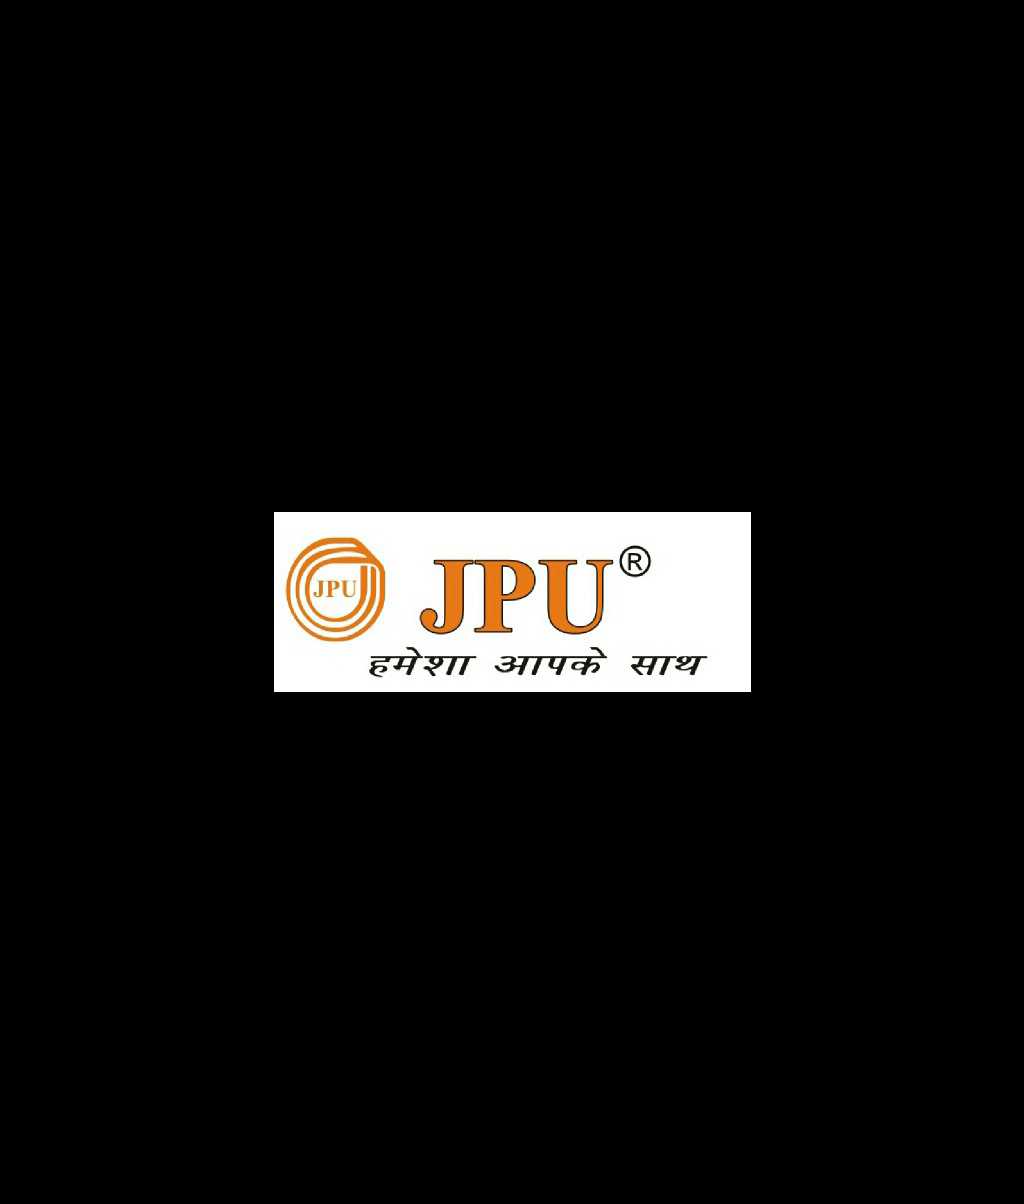 Jpu Mobile Accessories